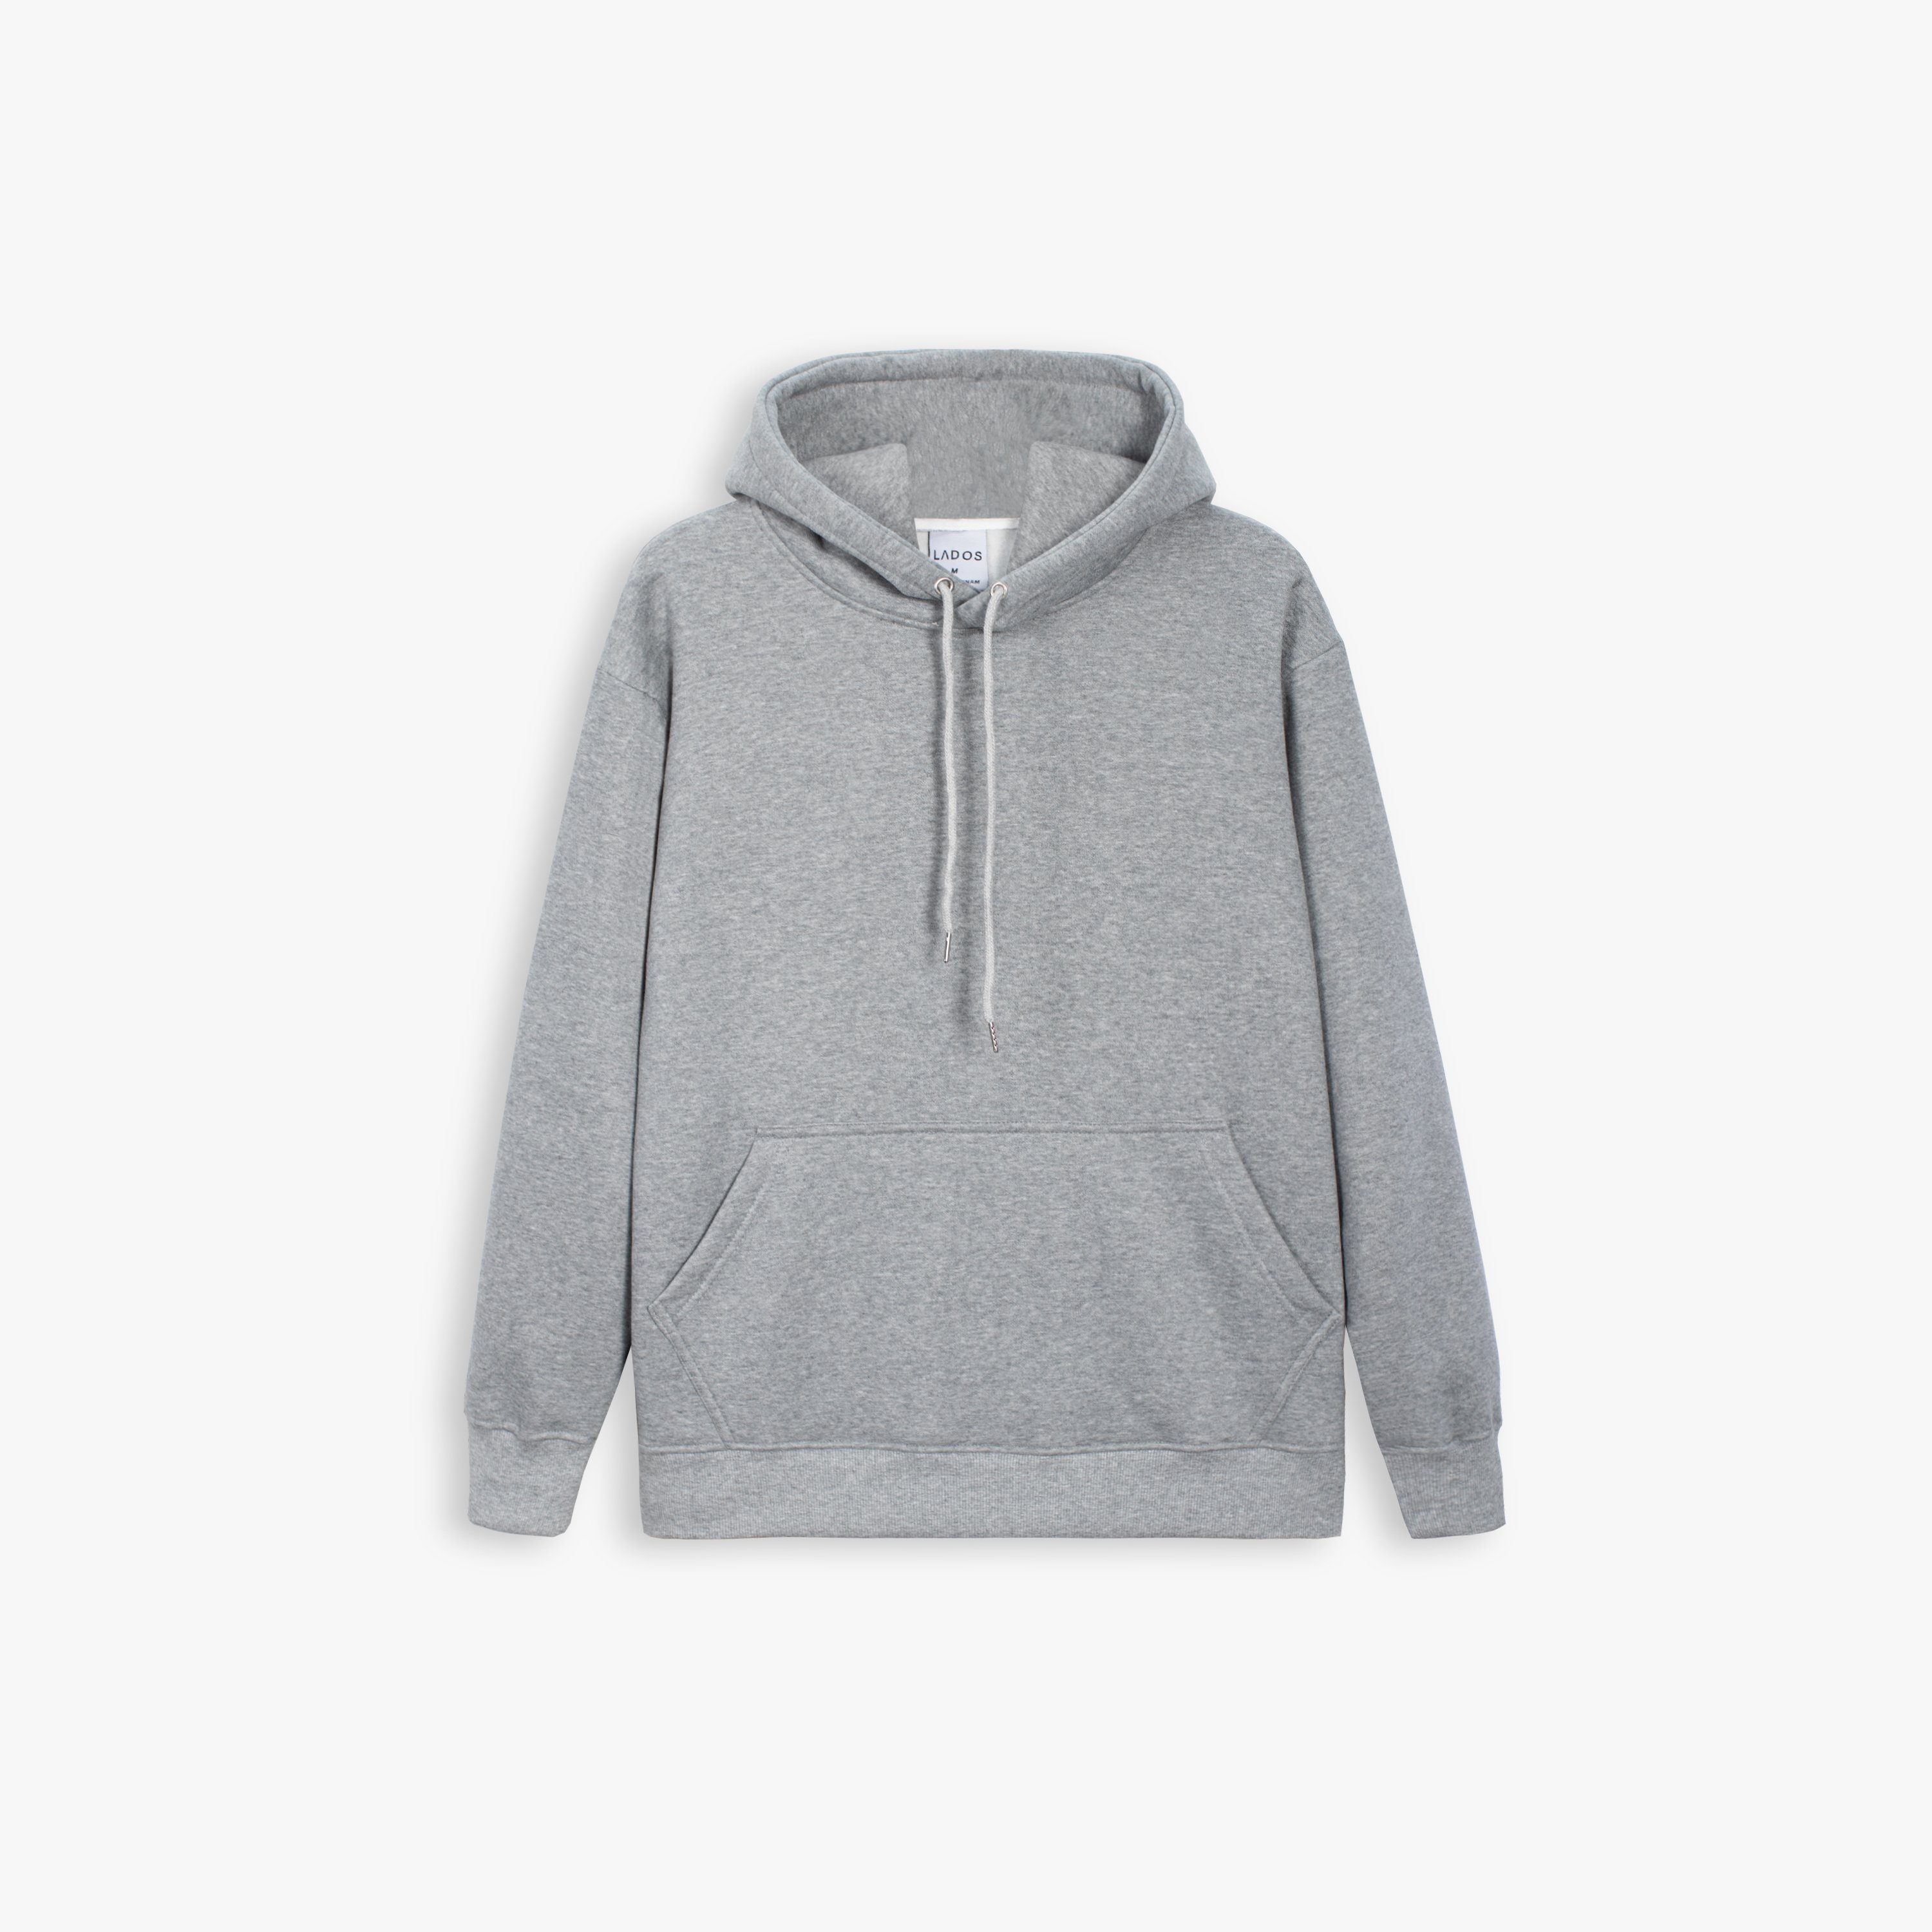 Áo hoodie unisex form rộng trơn dài tay LADOS - 9064 với chất thun nỉ dày ,mềm mịn